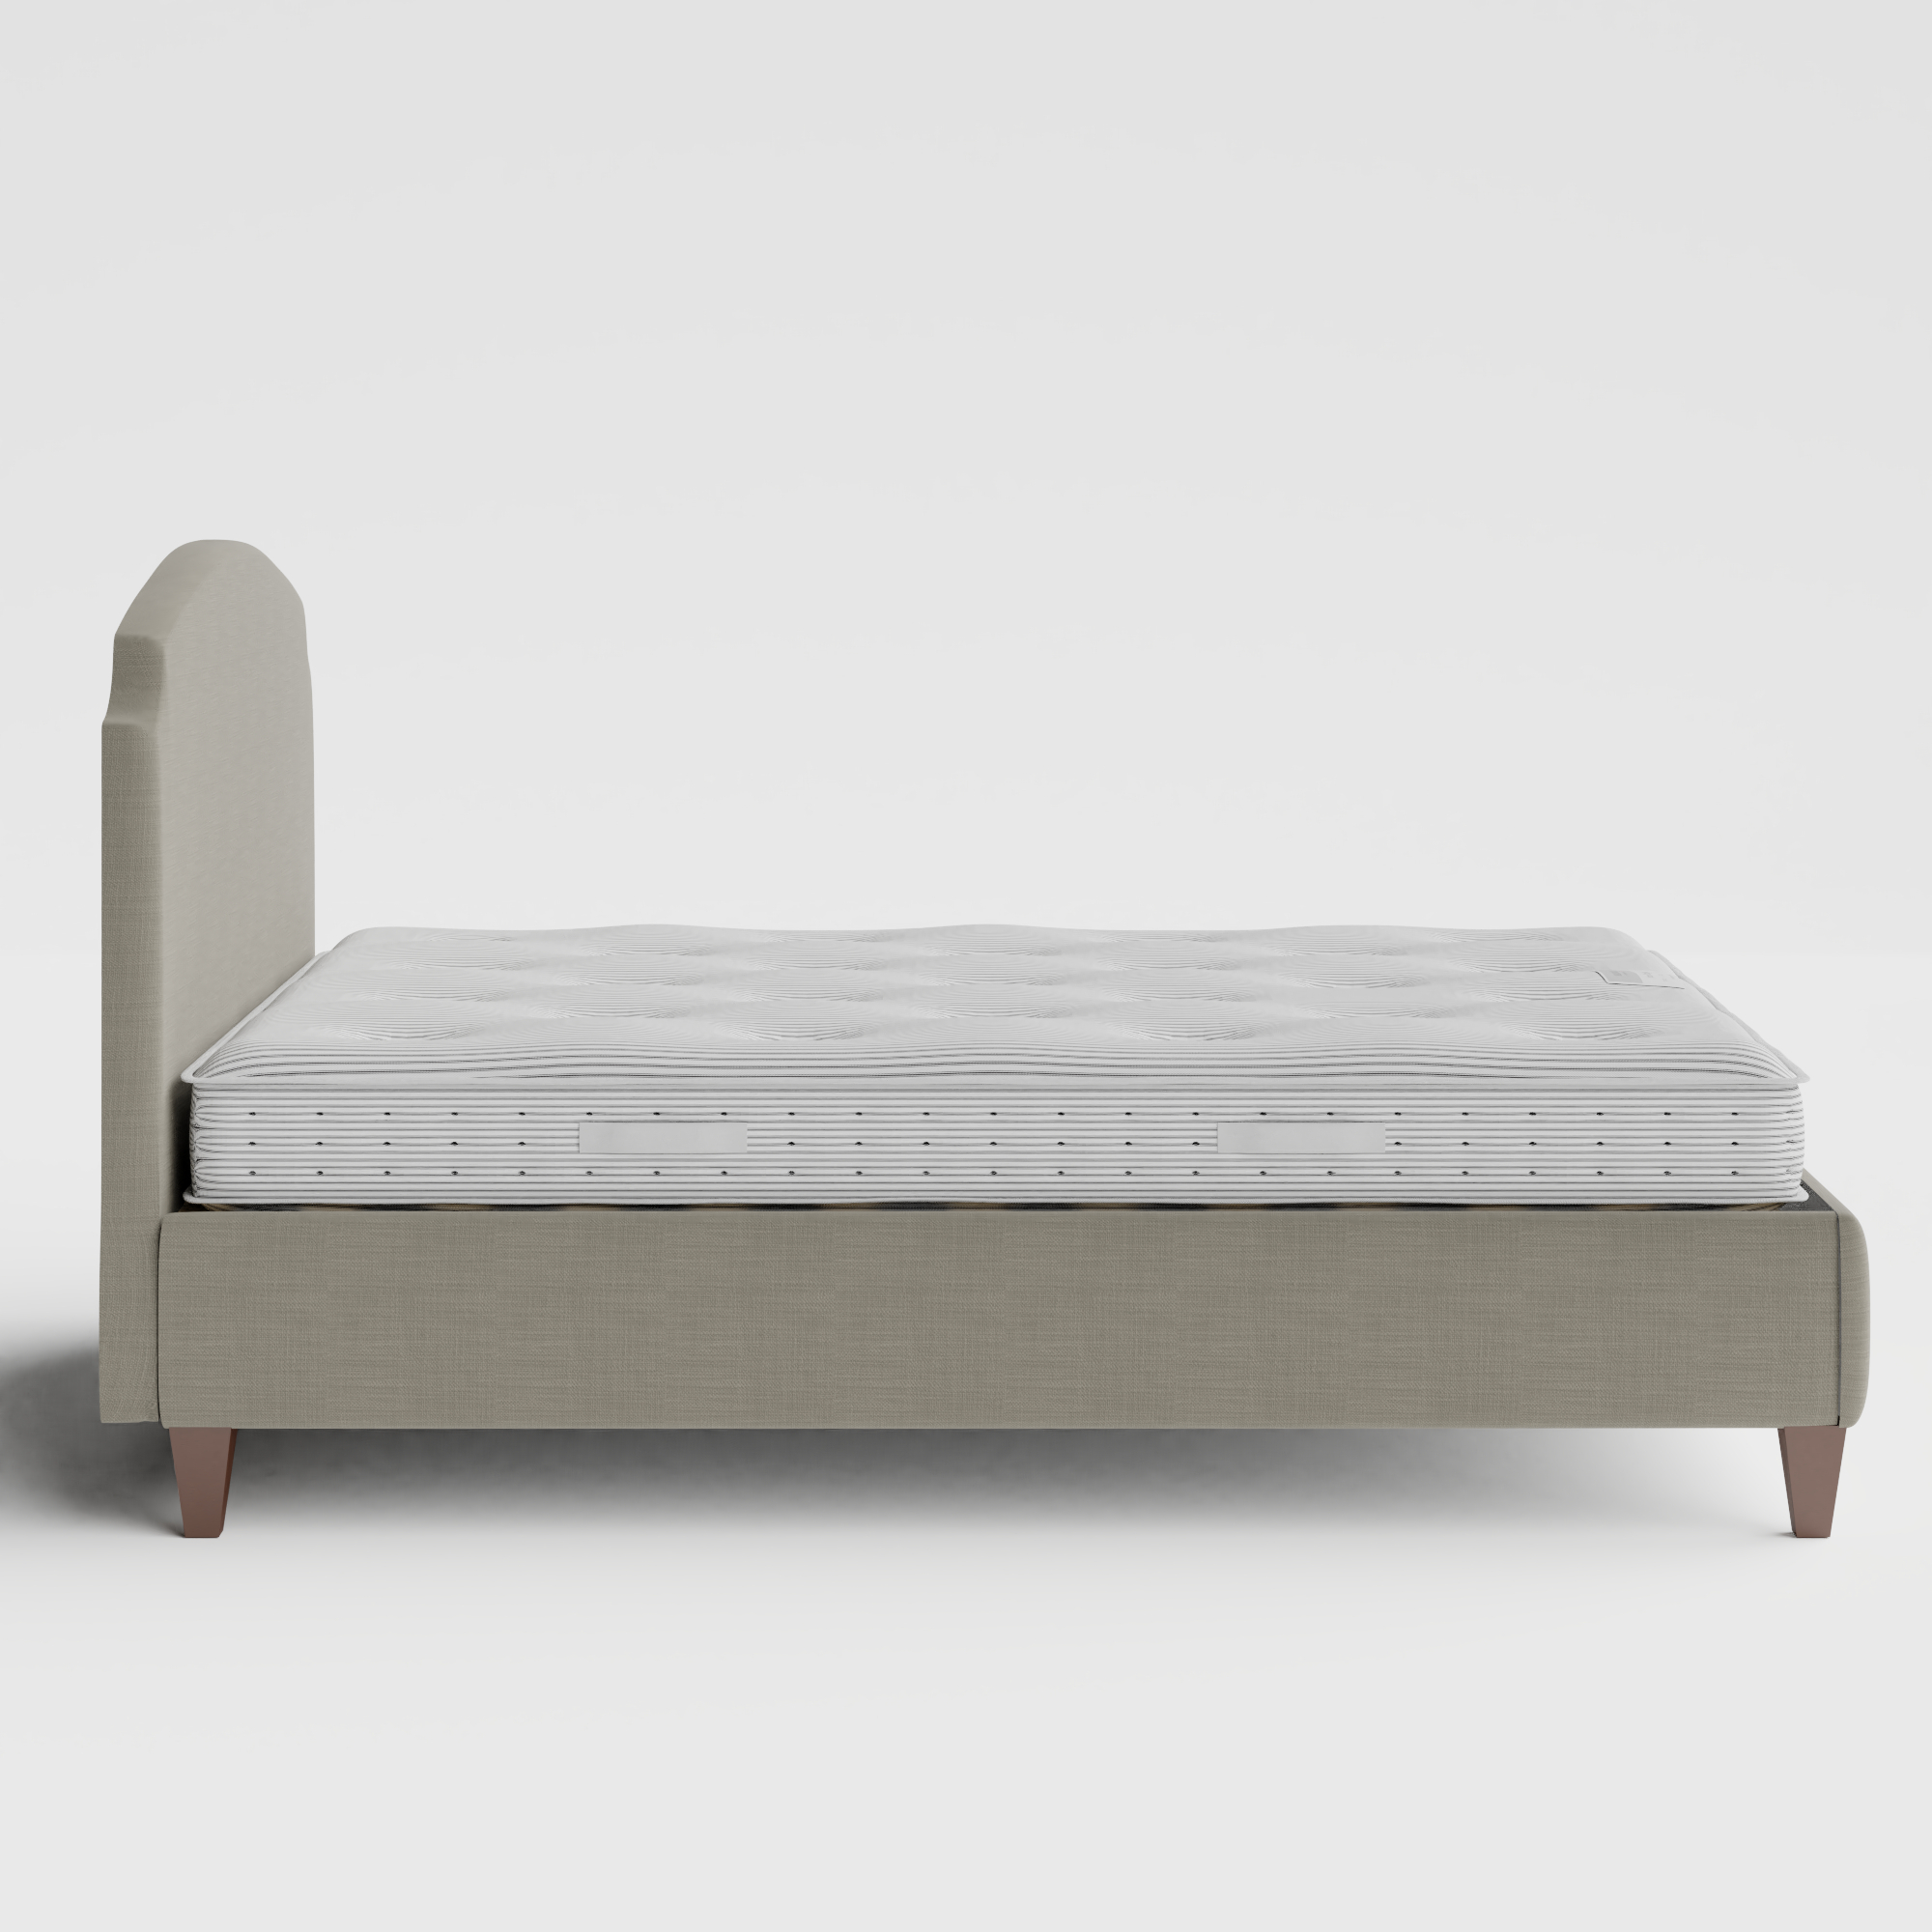 Lide cama tapizada en tela gris con colchón